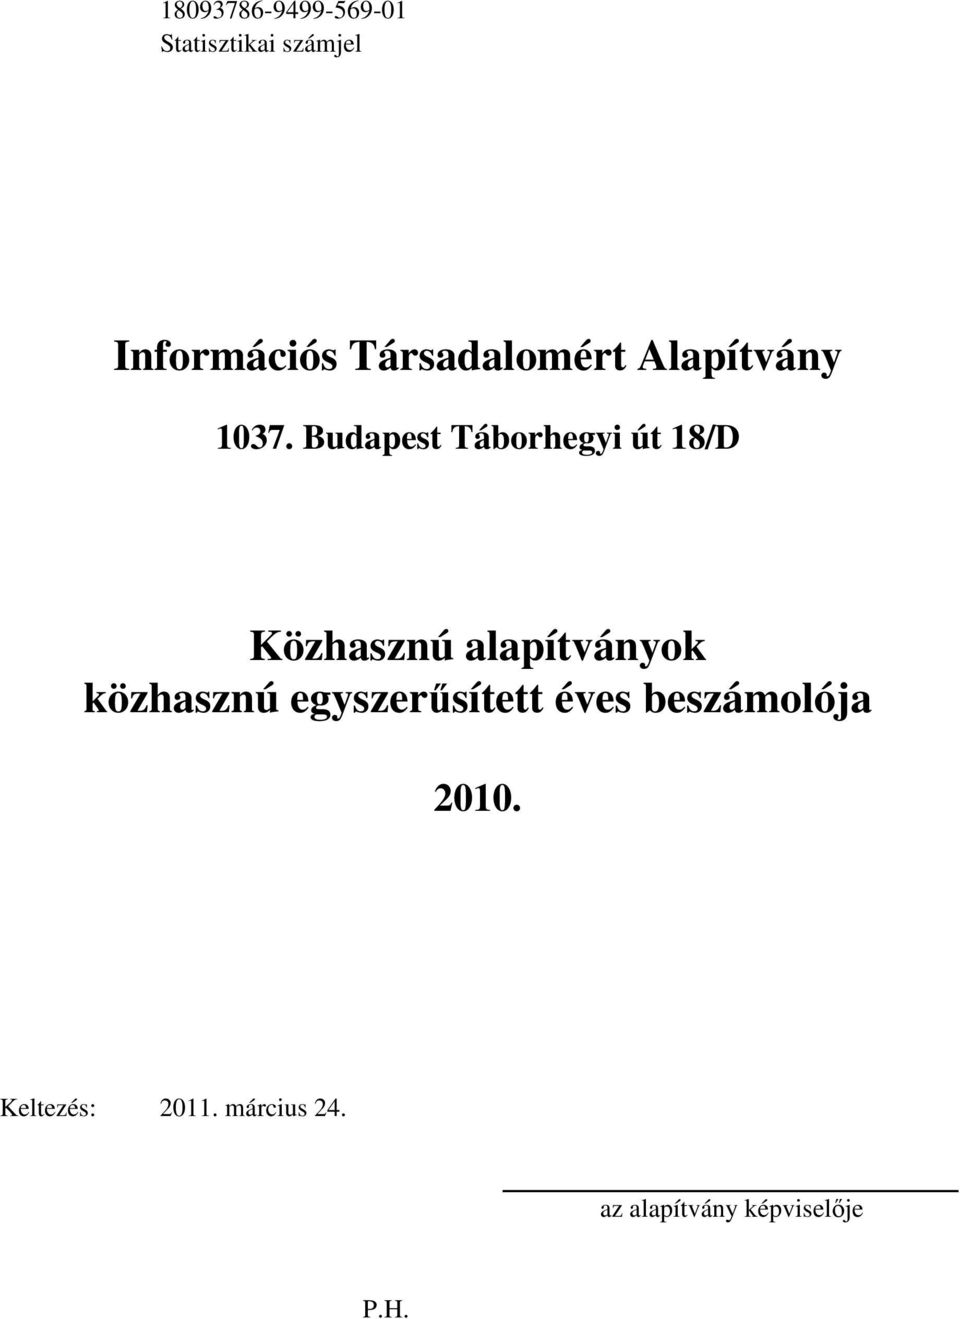 közhasznú egyszer sített éves beszámolója 2010.